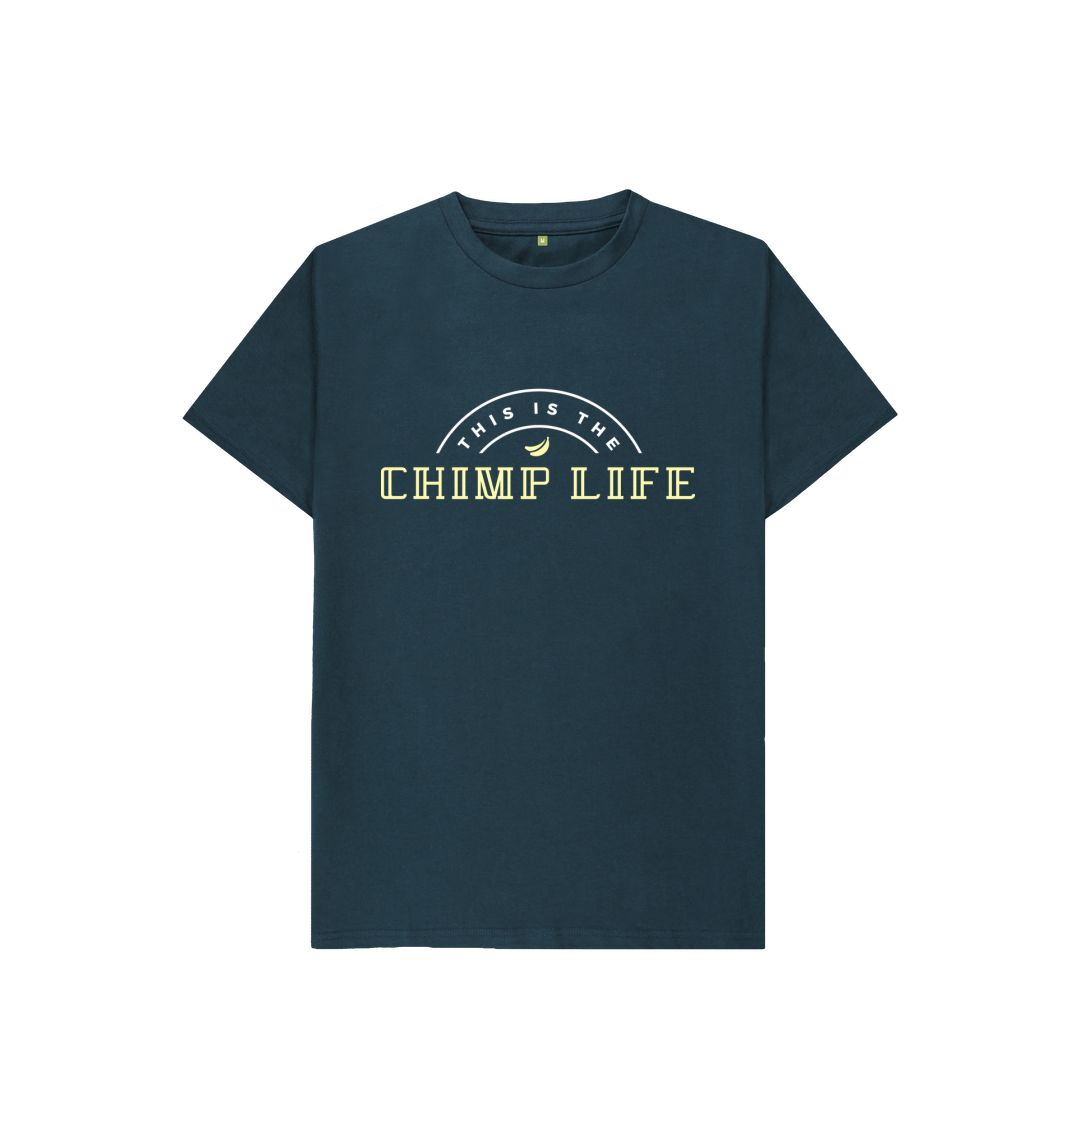 Denim Blue Youth Chimp Life Shirt